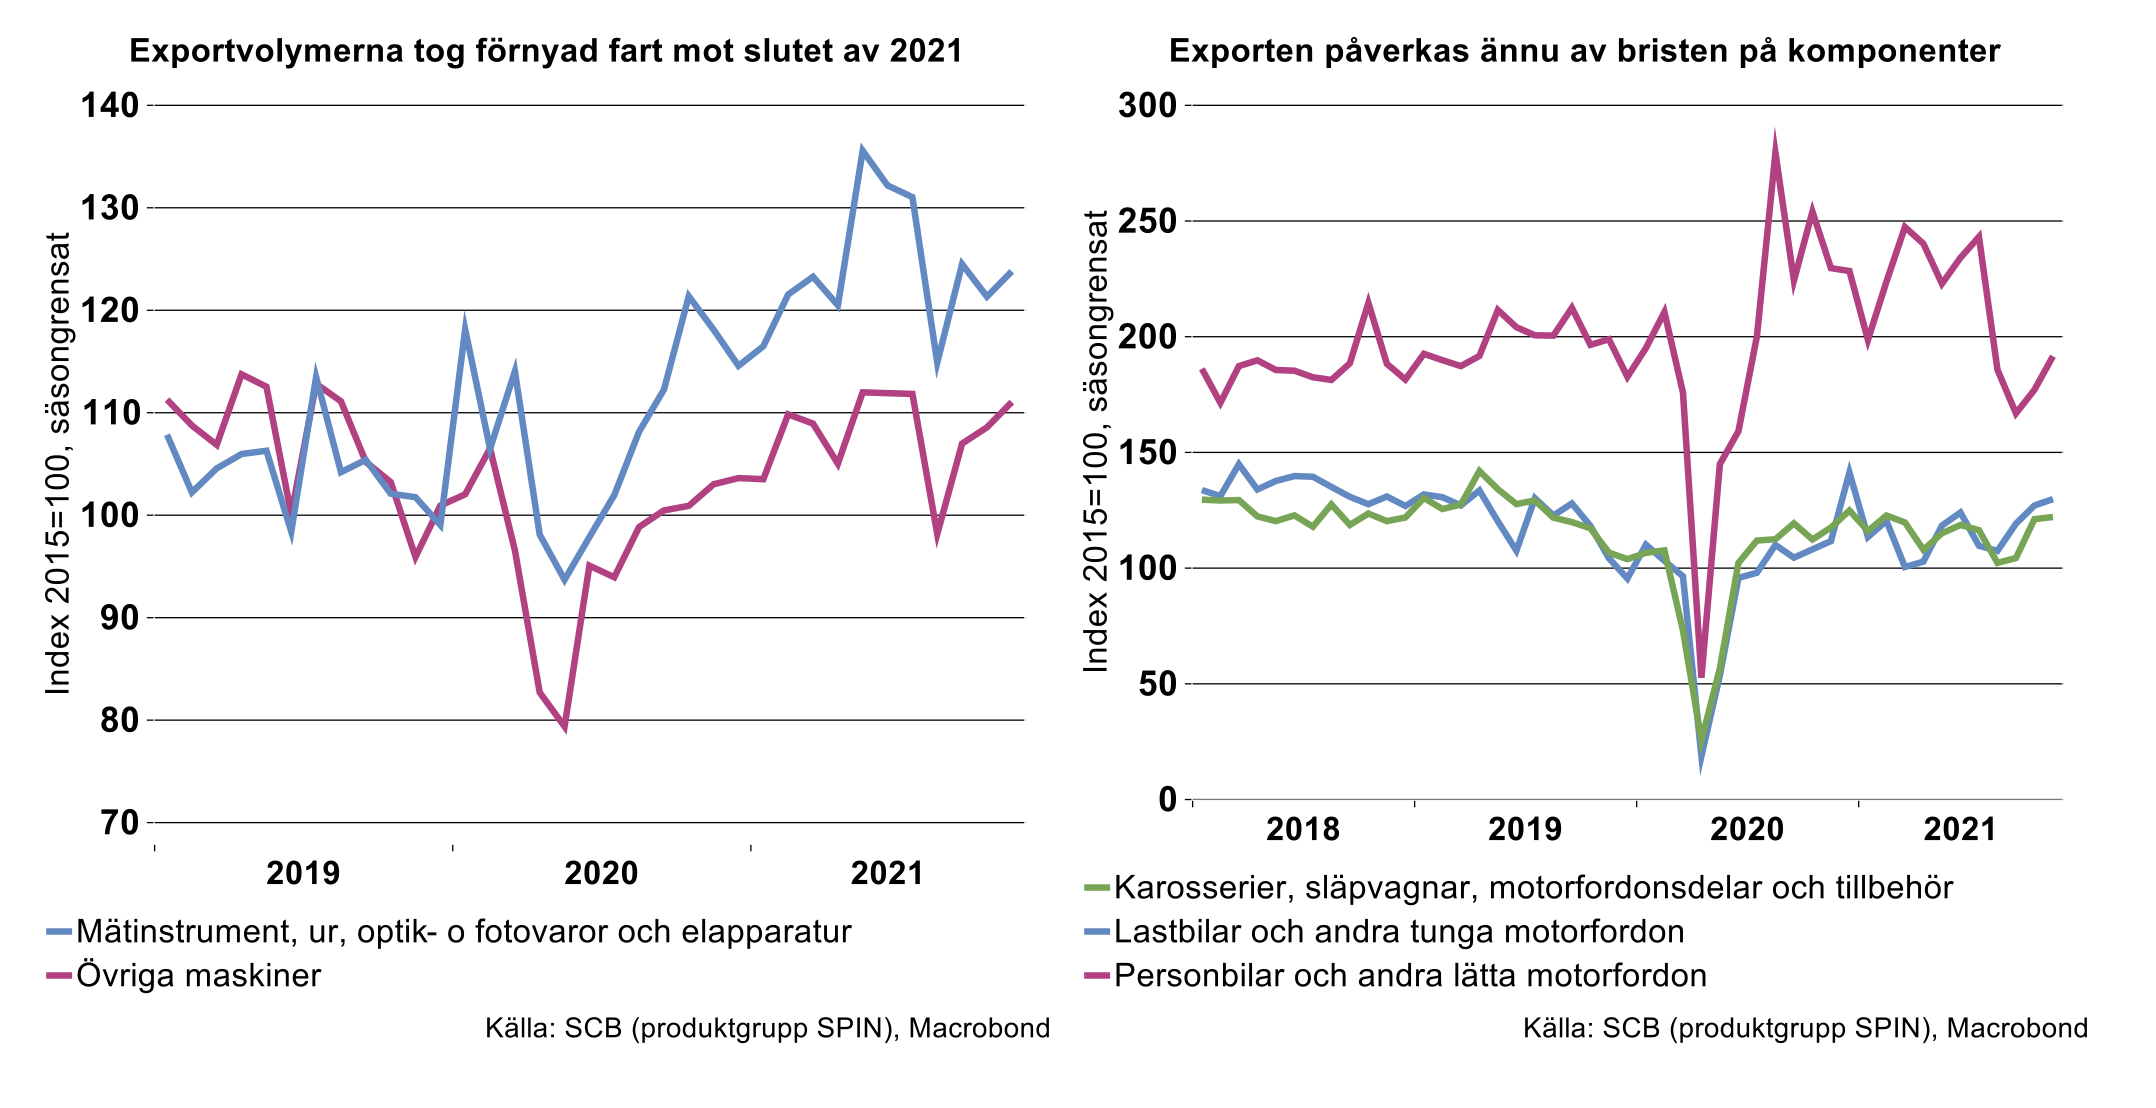 exportvolymerna-tog-fornyad-fart-mot-slutet-av-2021.png